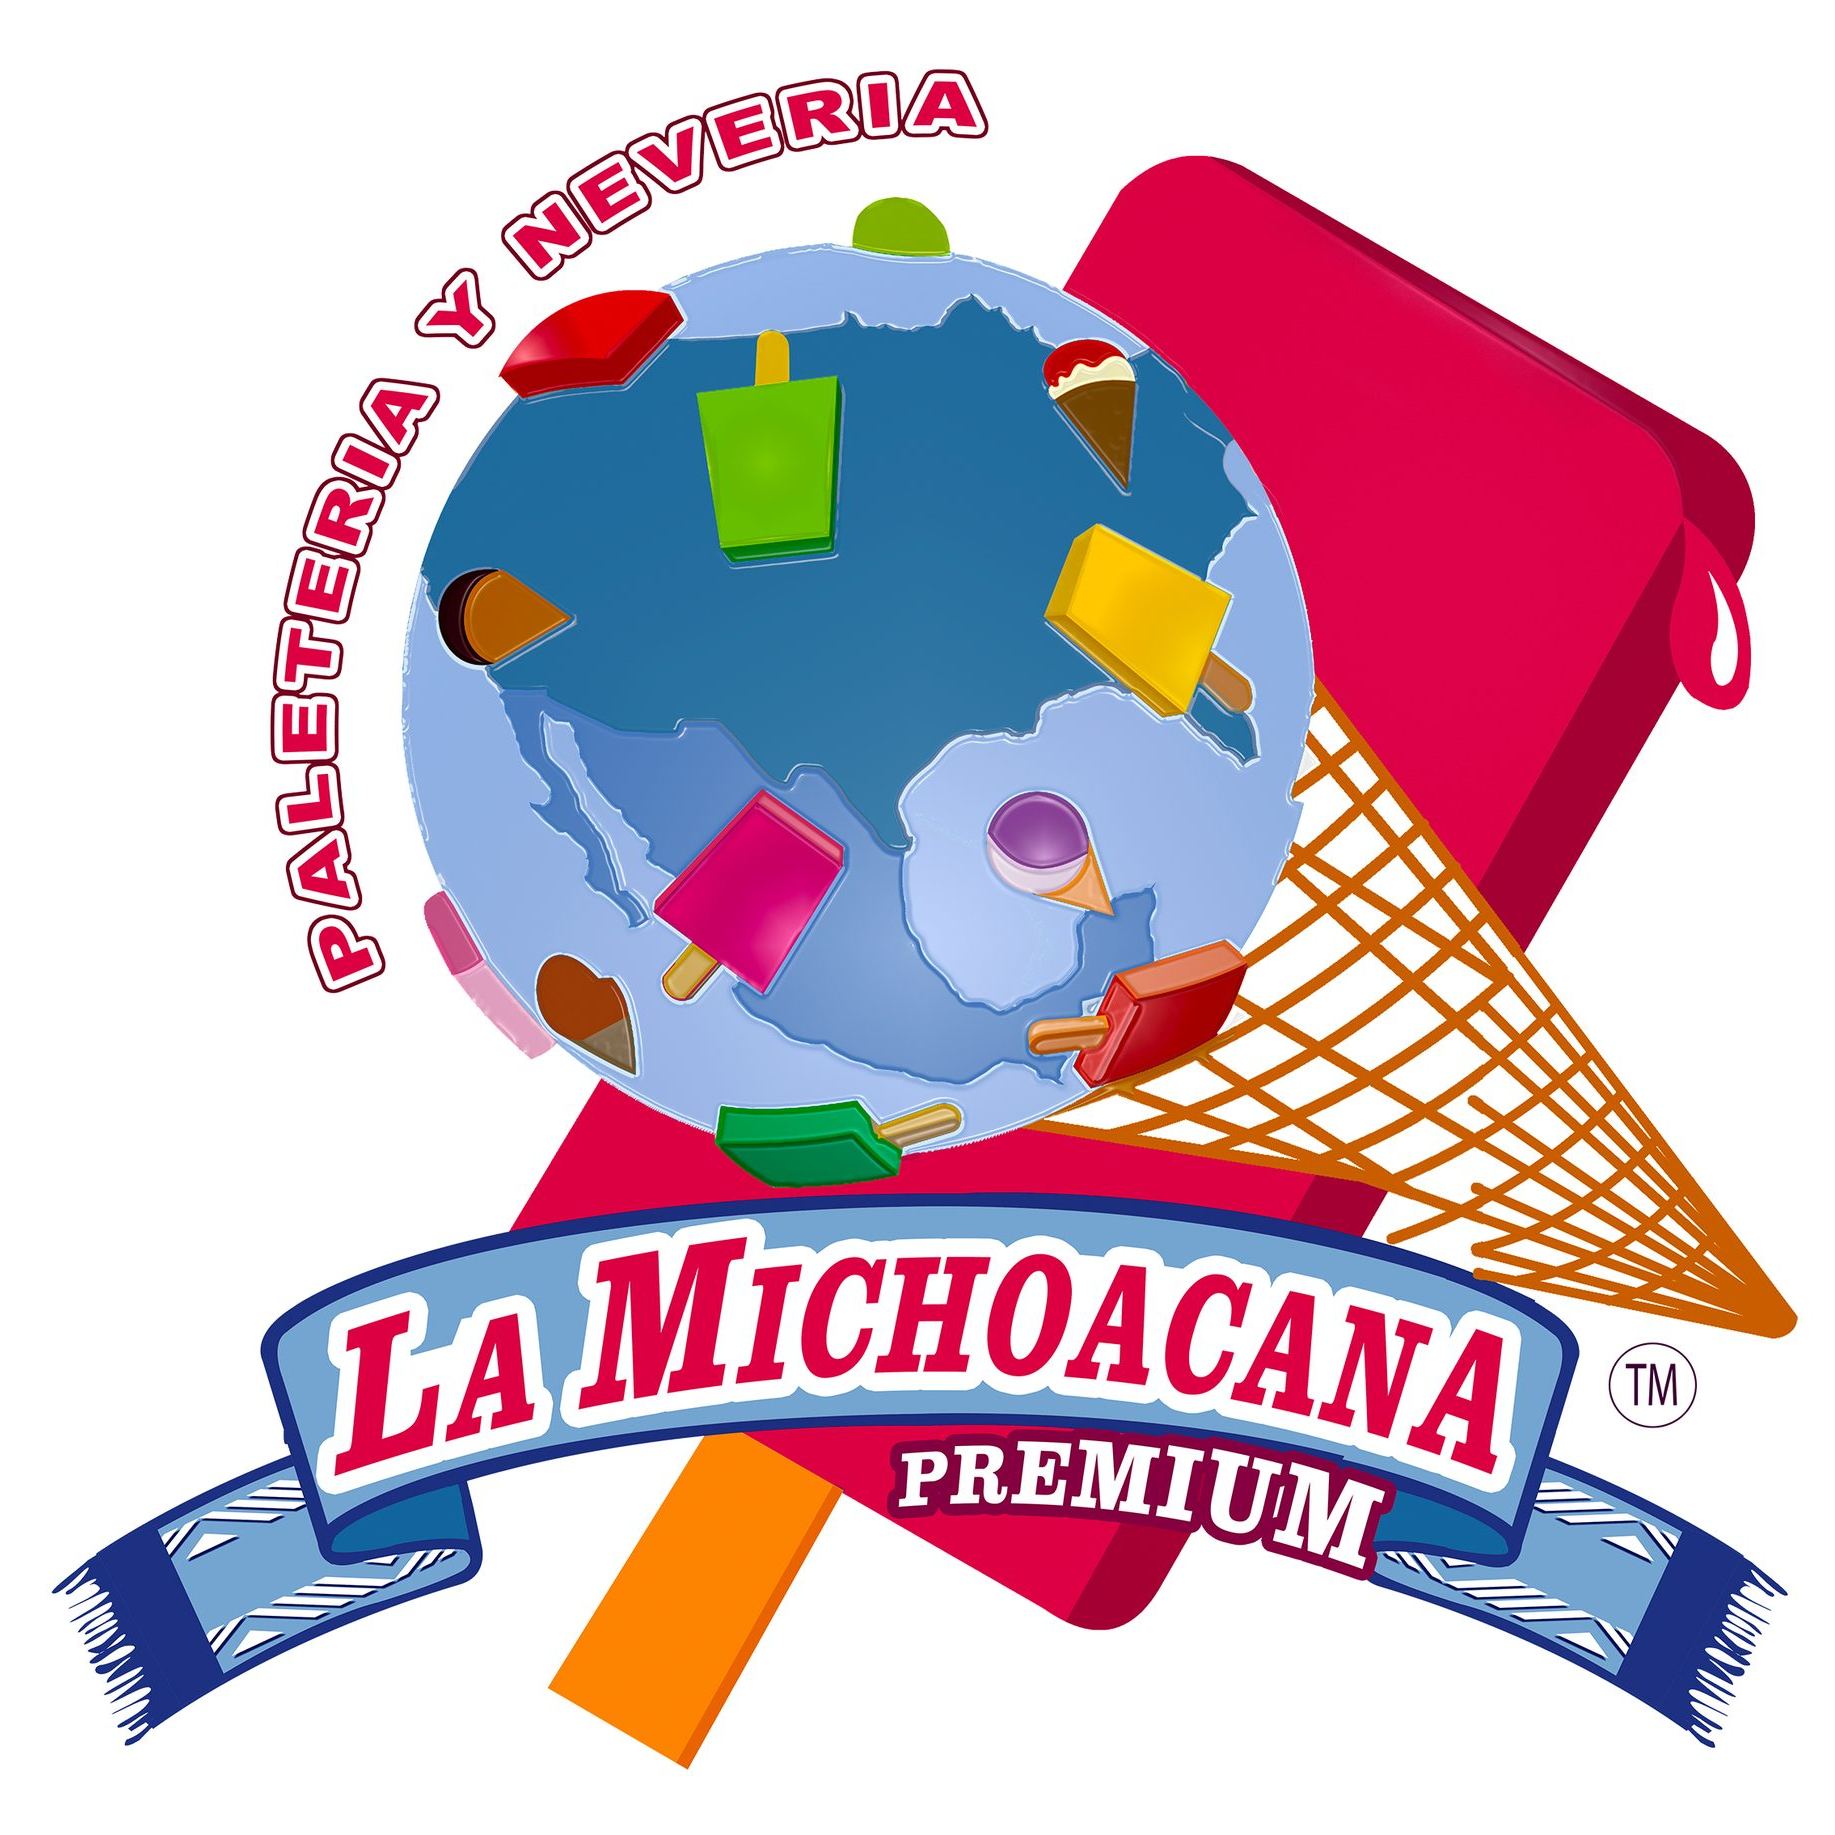 La Michoacana Premium Tempe Logo